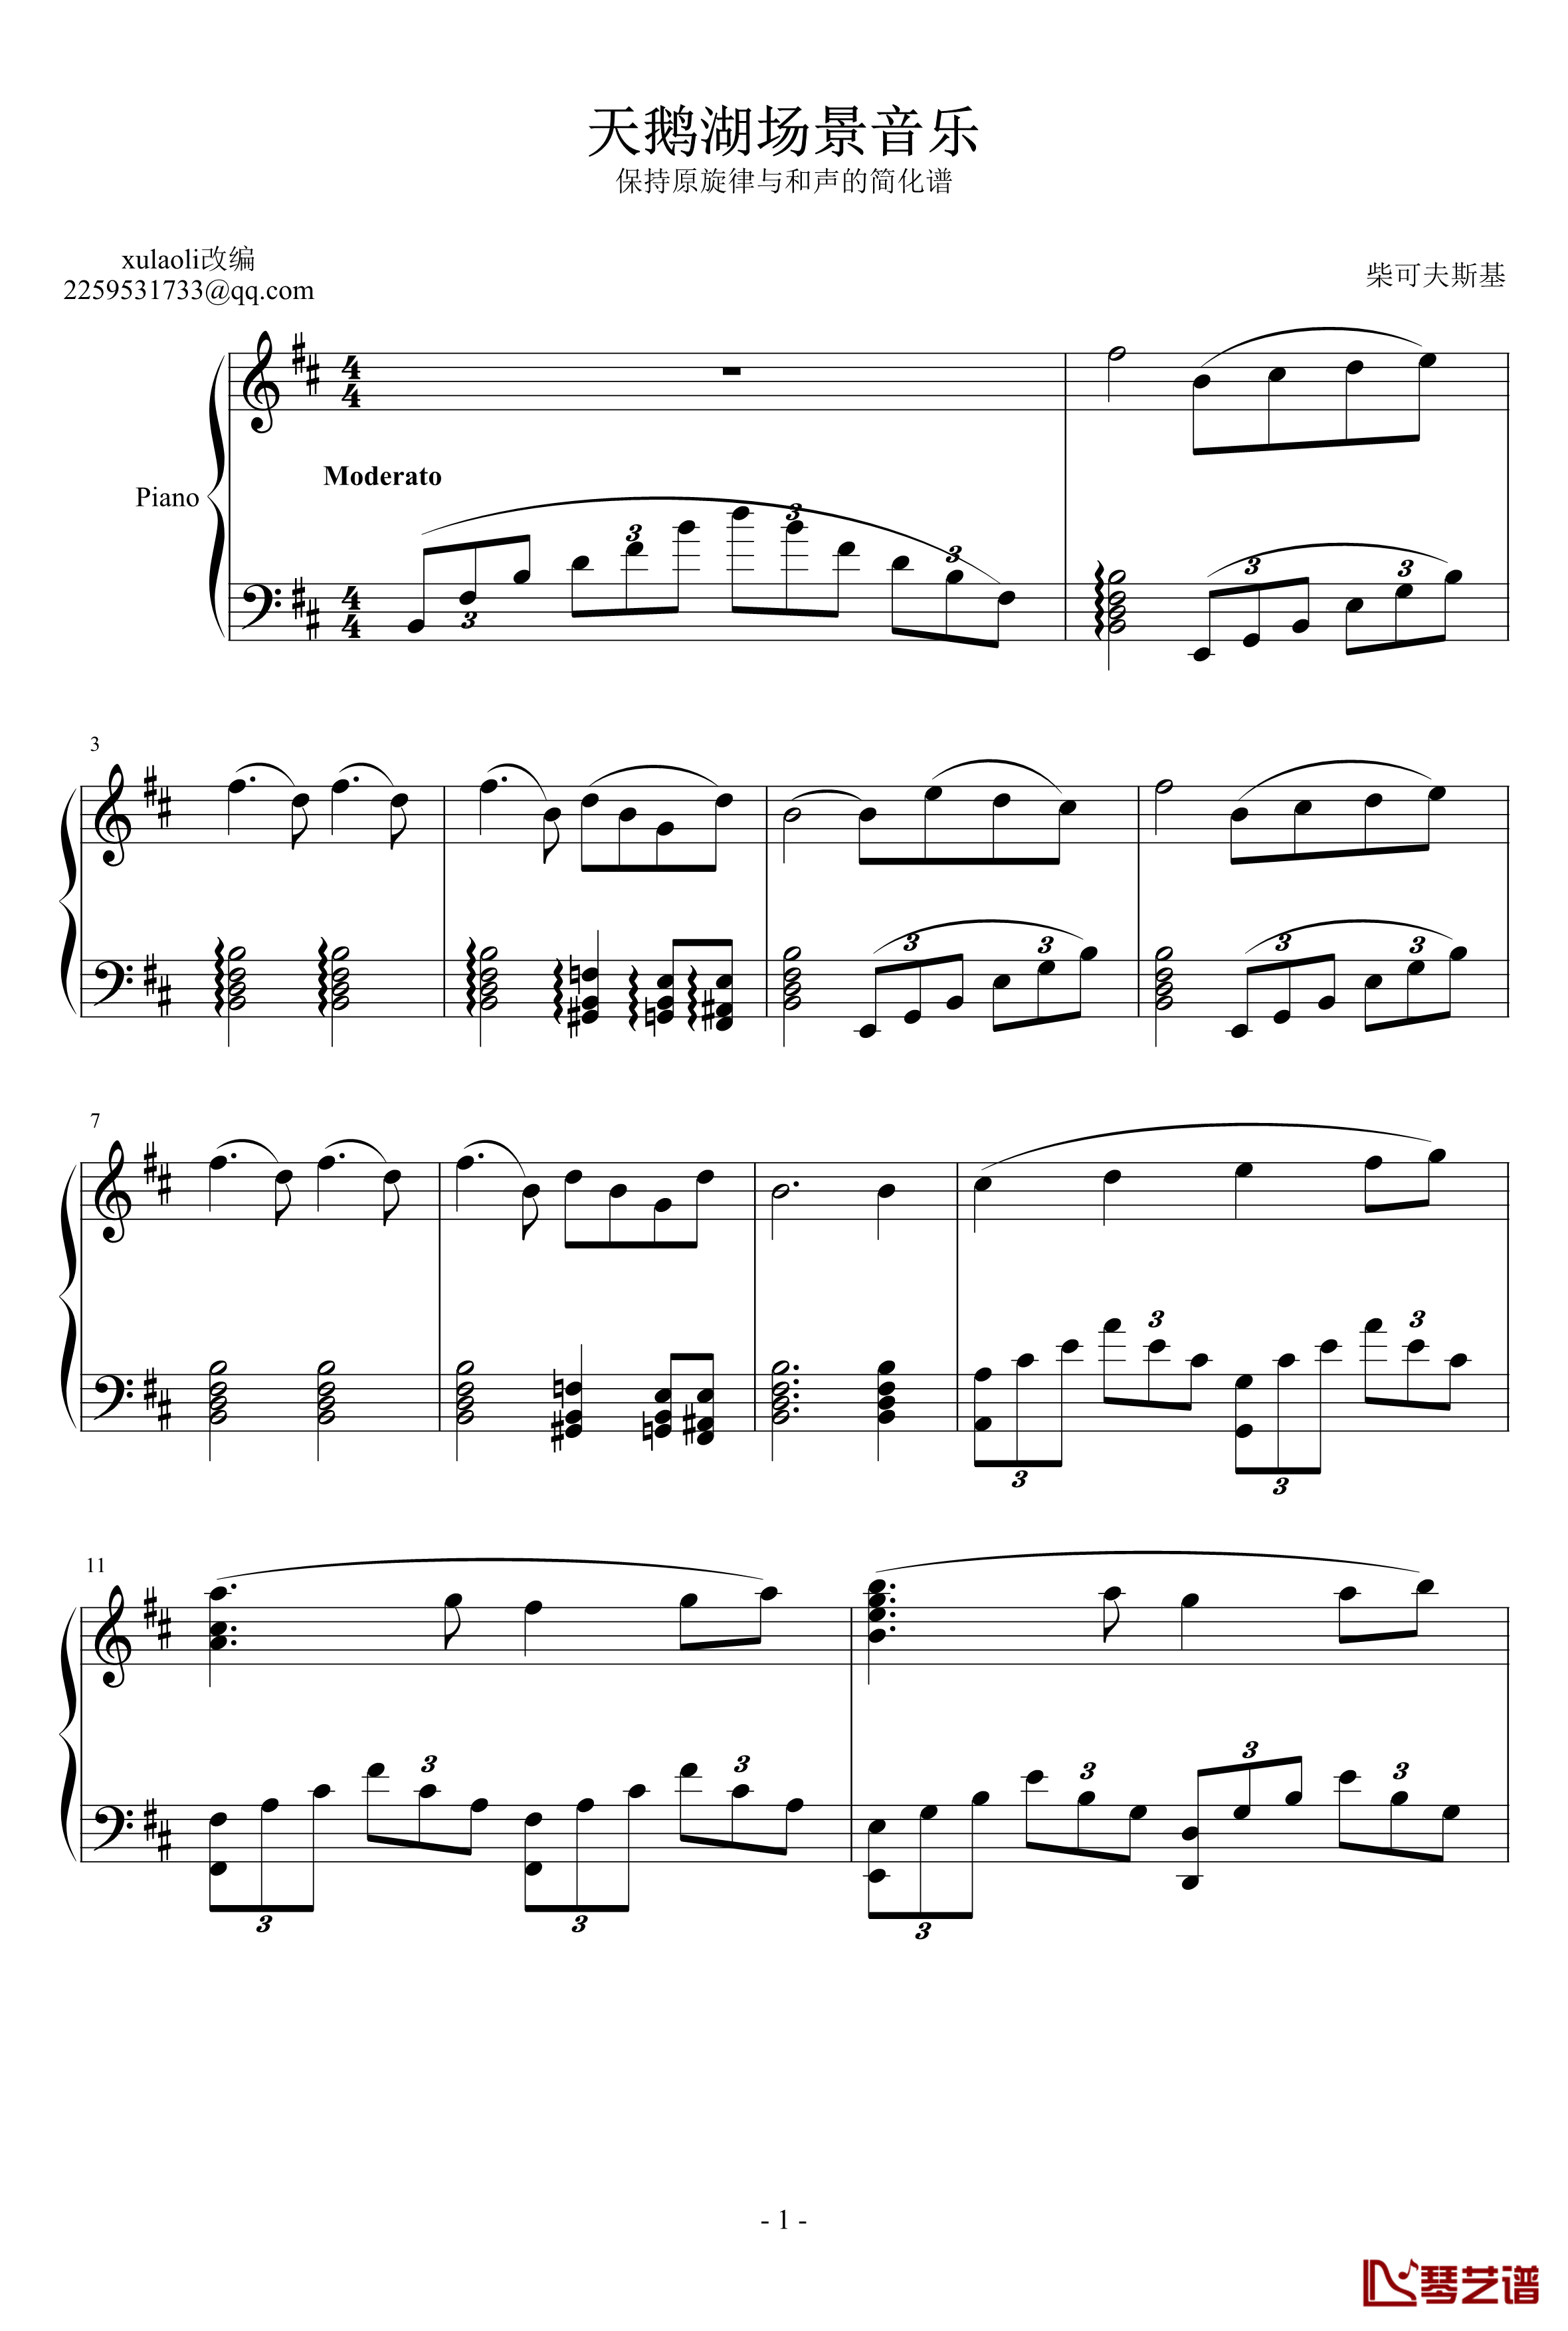 天鹅湖场景旋律钢琴谱-柴科夫斯基-Peter Ilyich Tchaikovsky